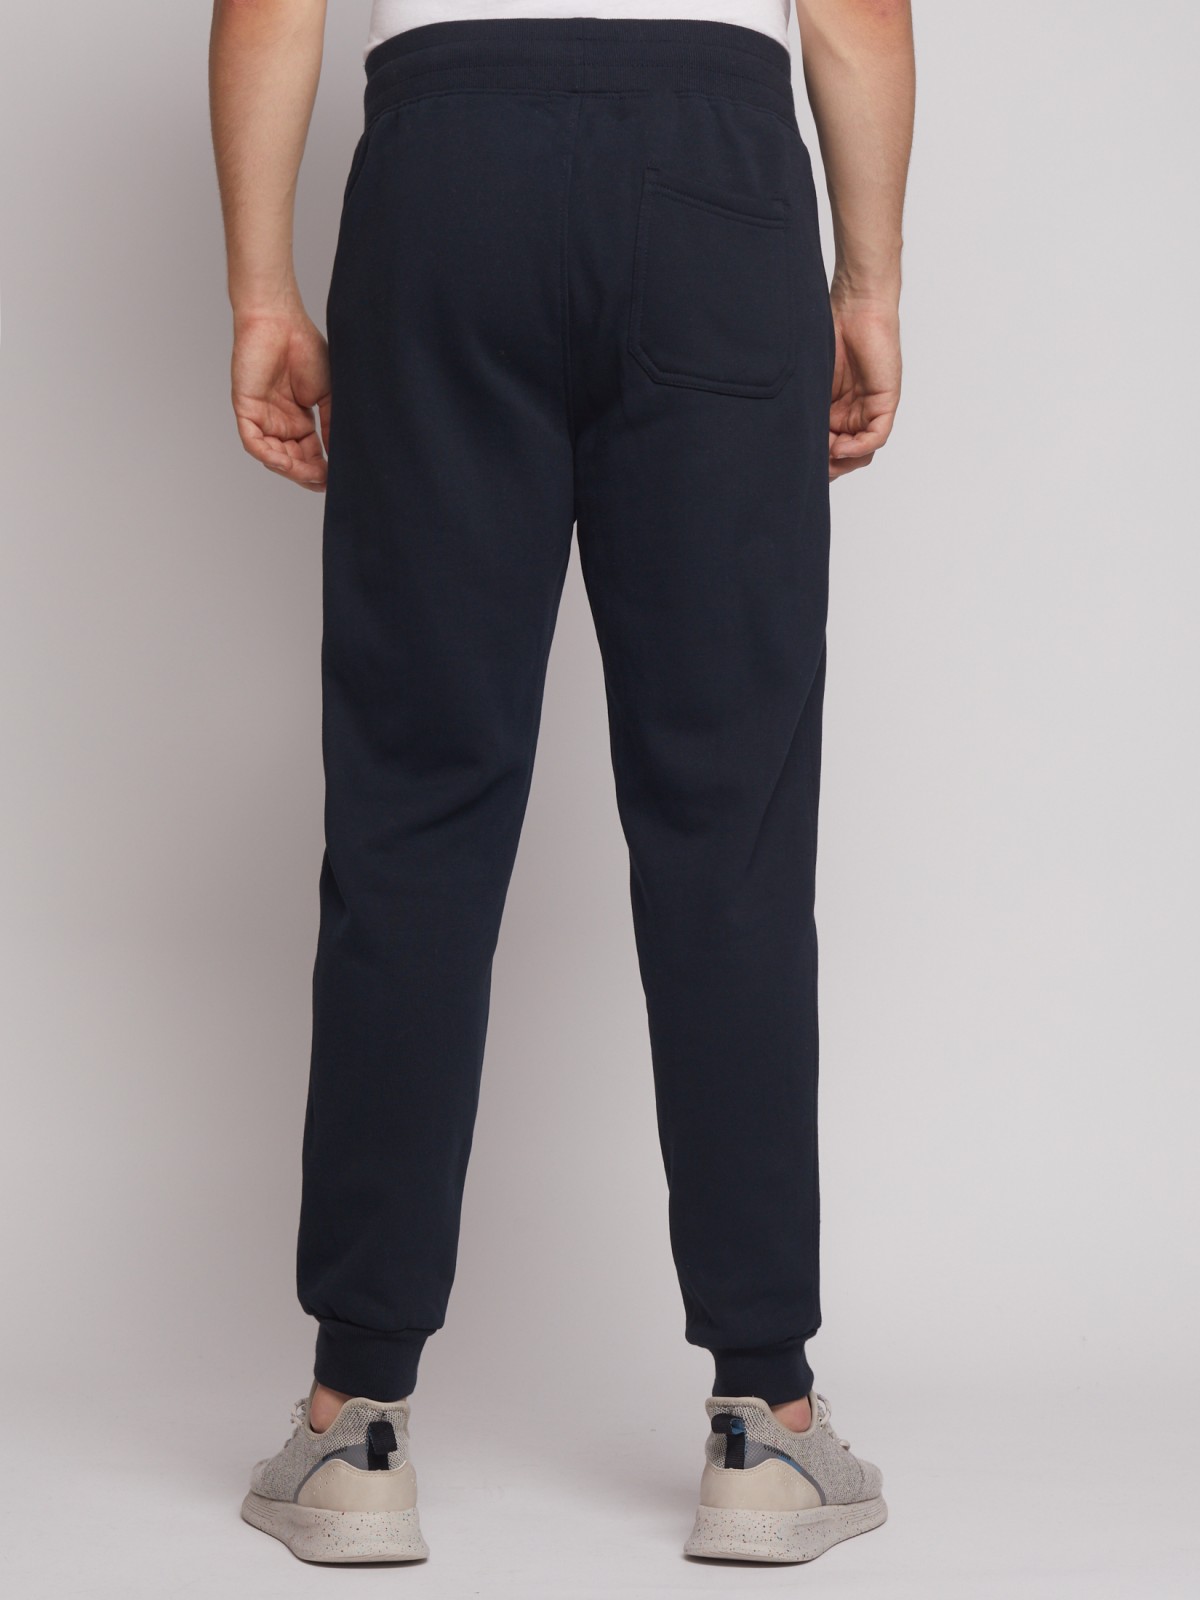 Спортивные брюки-джоггеры zolla 212427675012, цвет темно-синий, размер S - фото 3